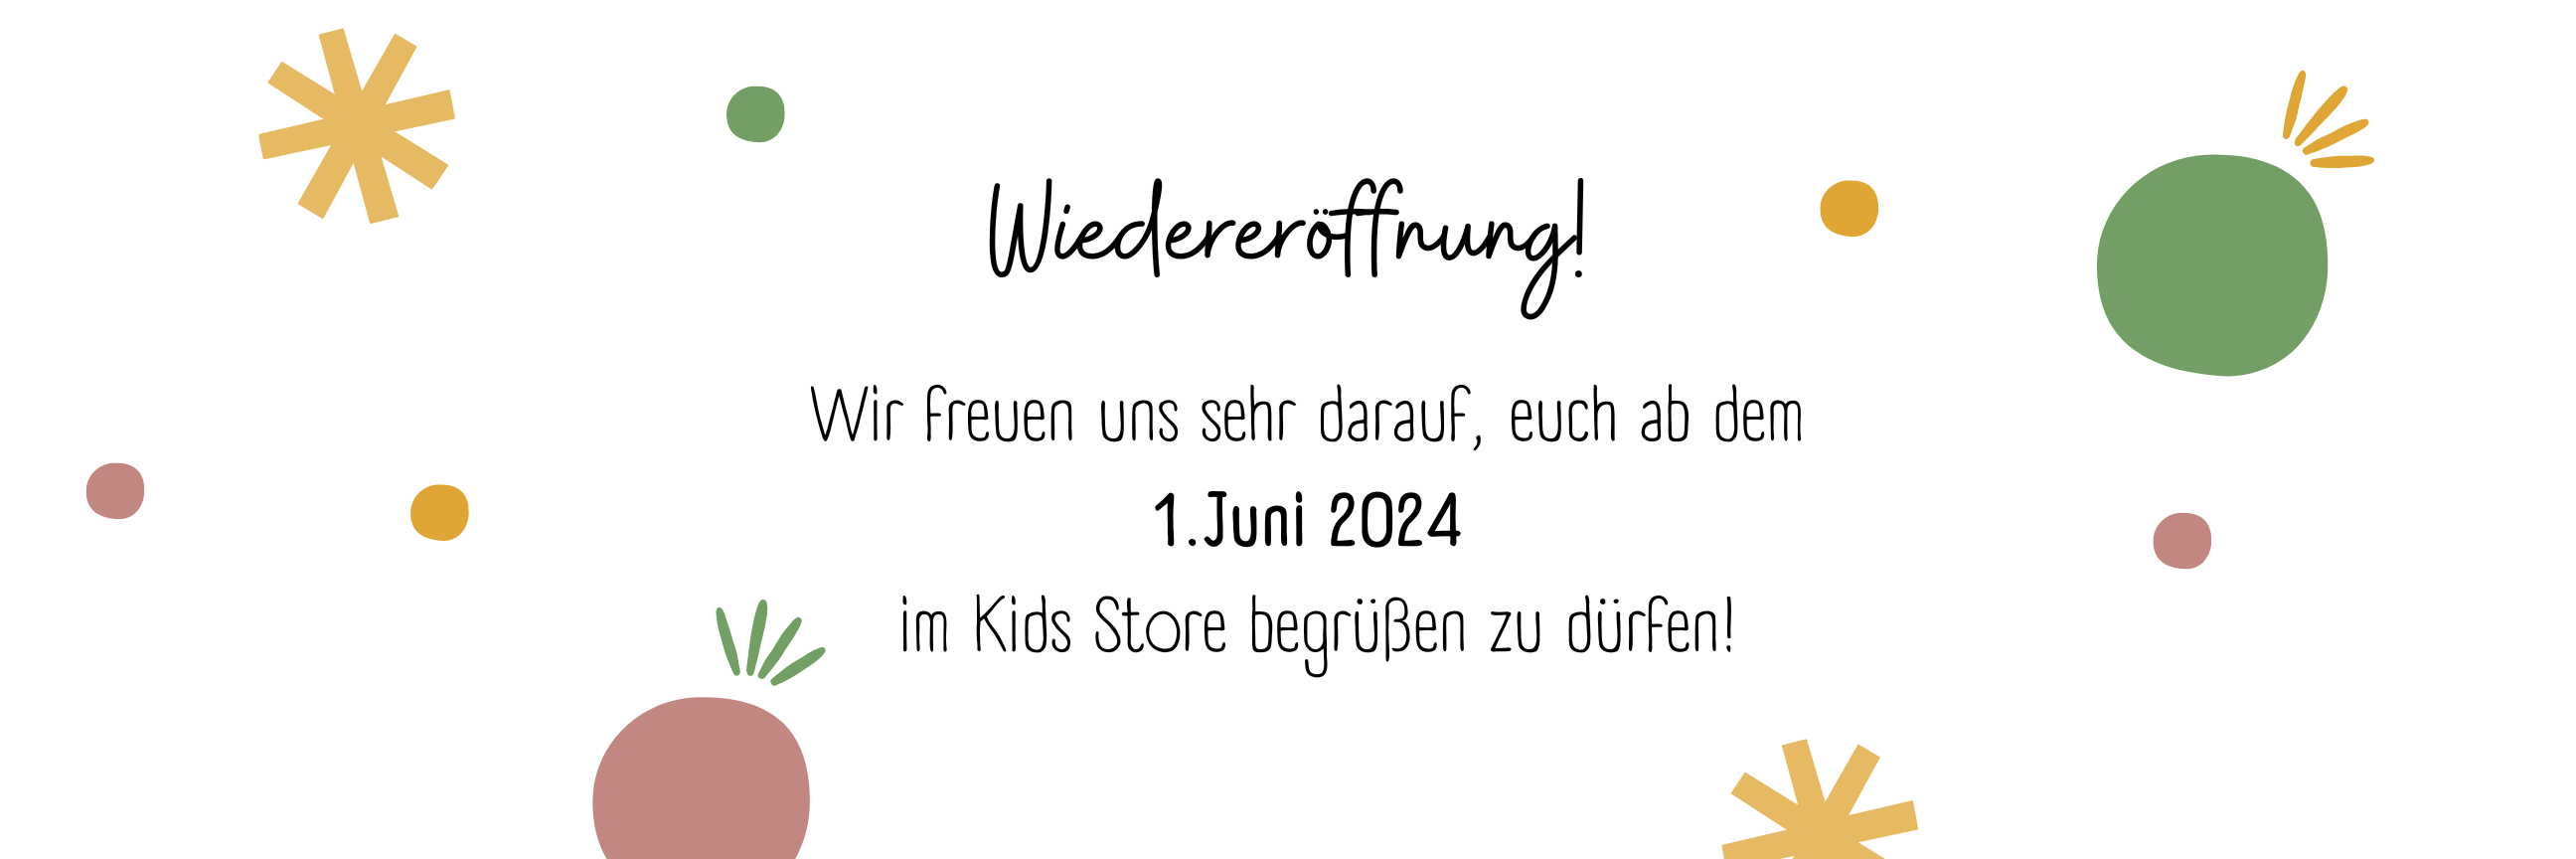 Wiedereröffnung Kids Store am 01. Juni 2014